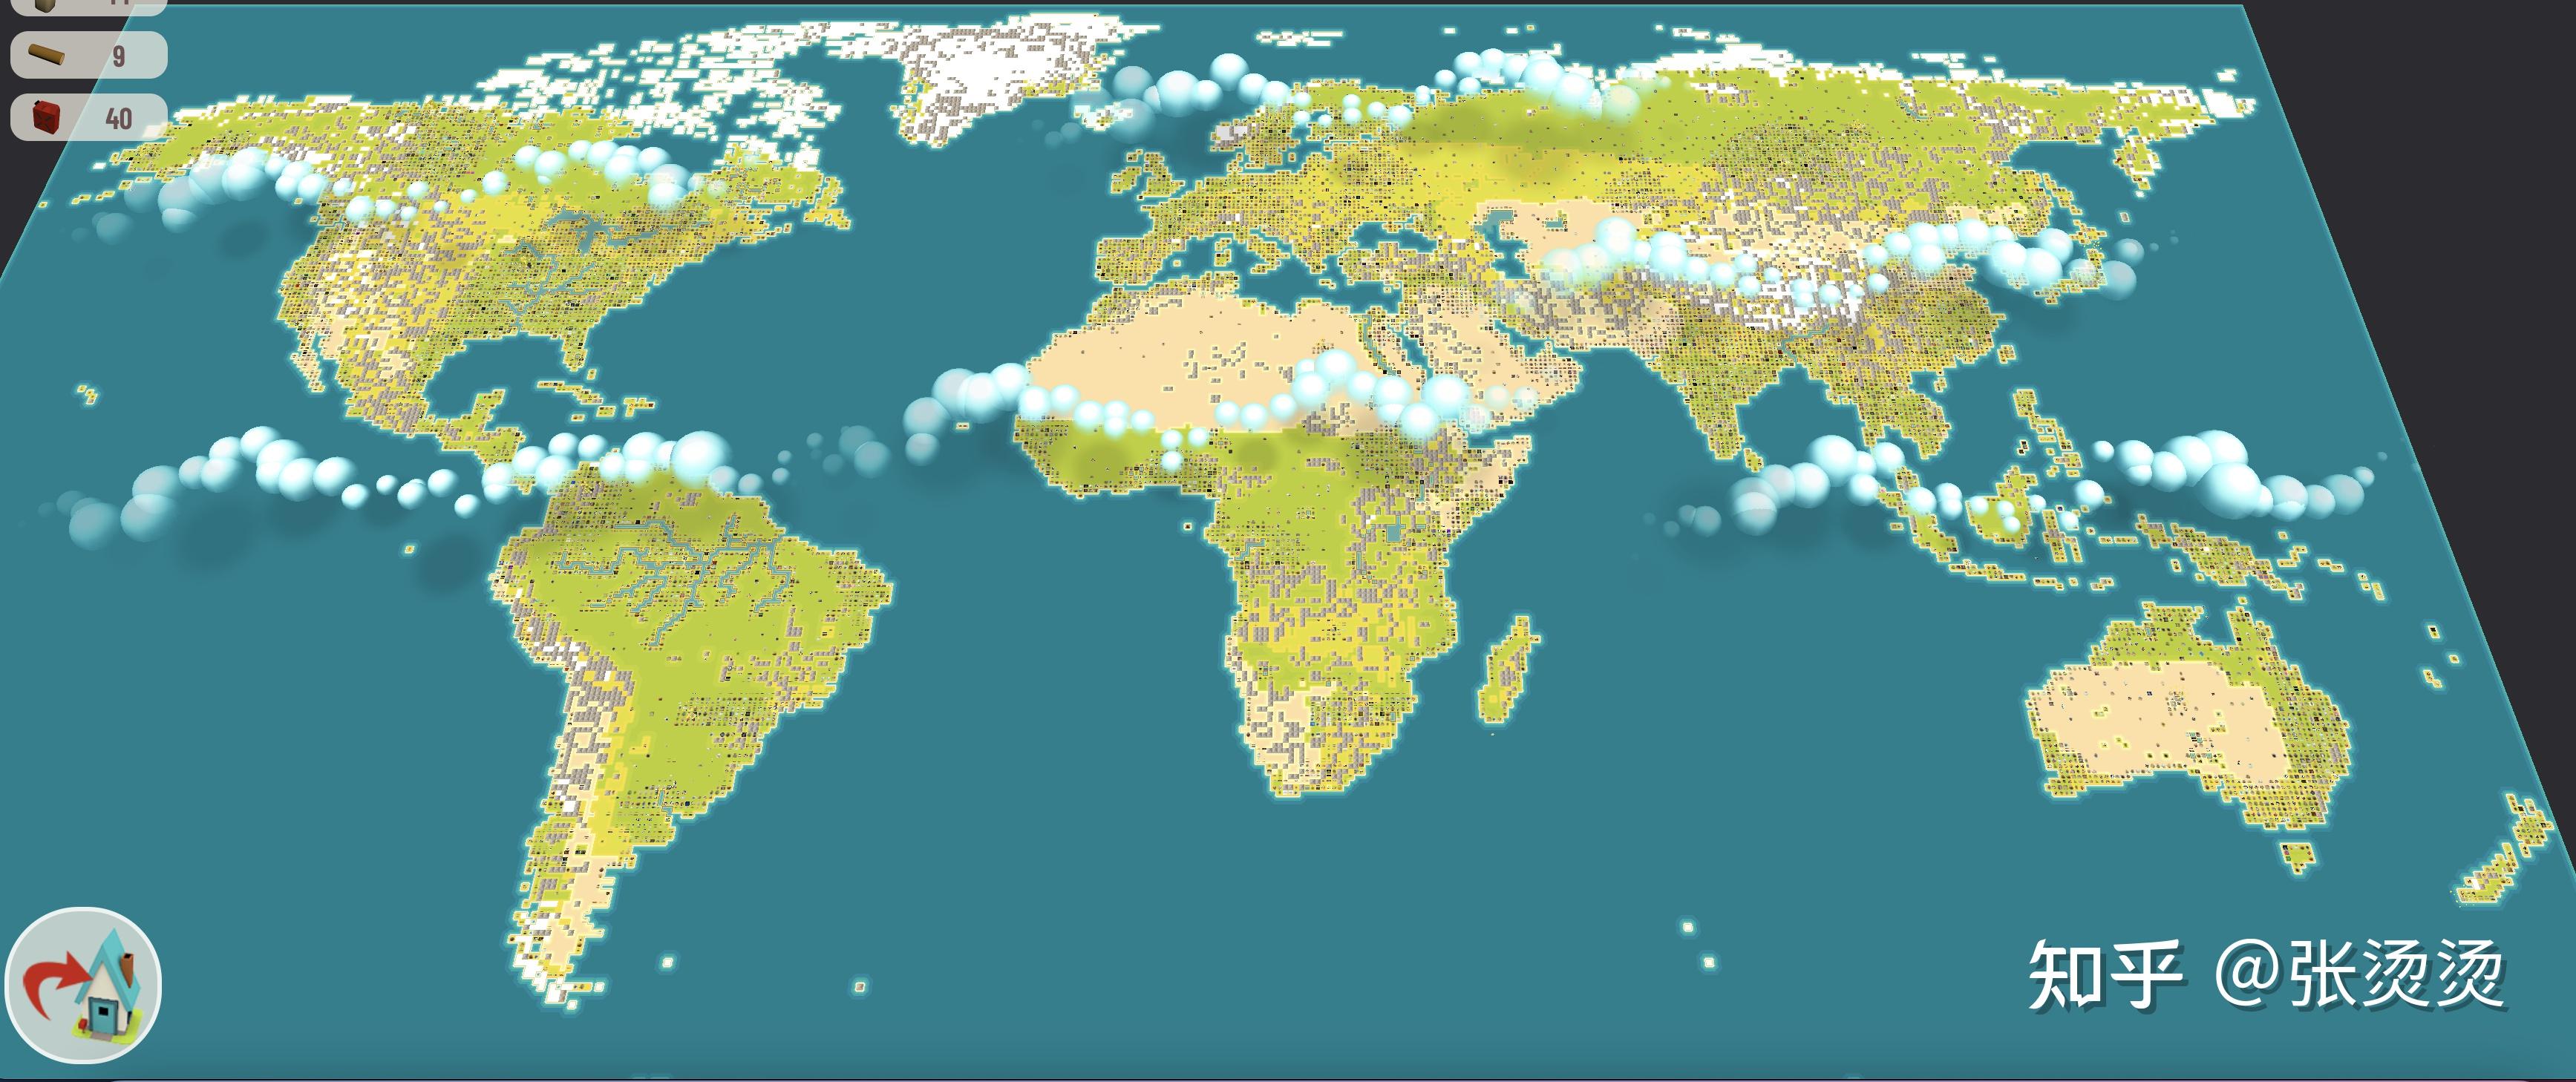 世界地图选出生点这是自己的towngala的目标是做真正好玩的游戏,而不